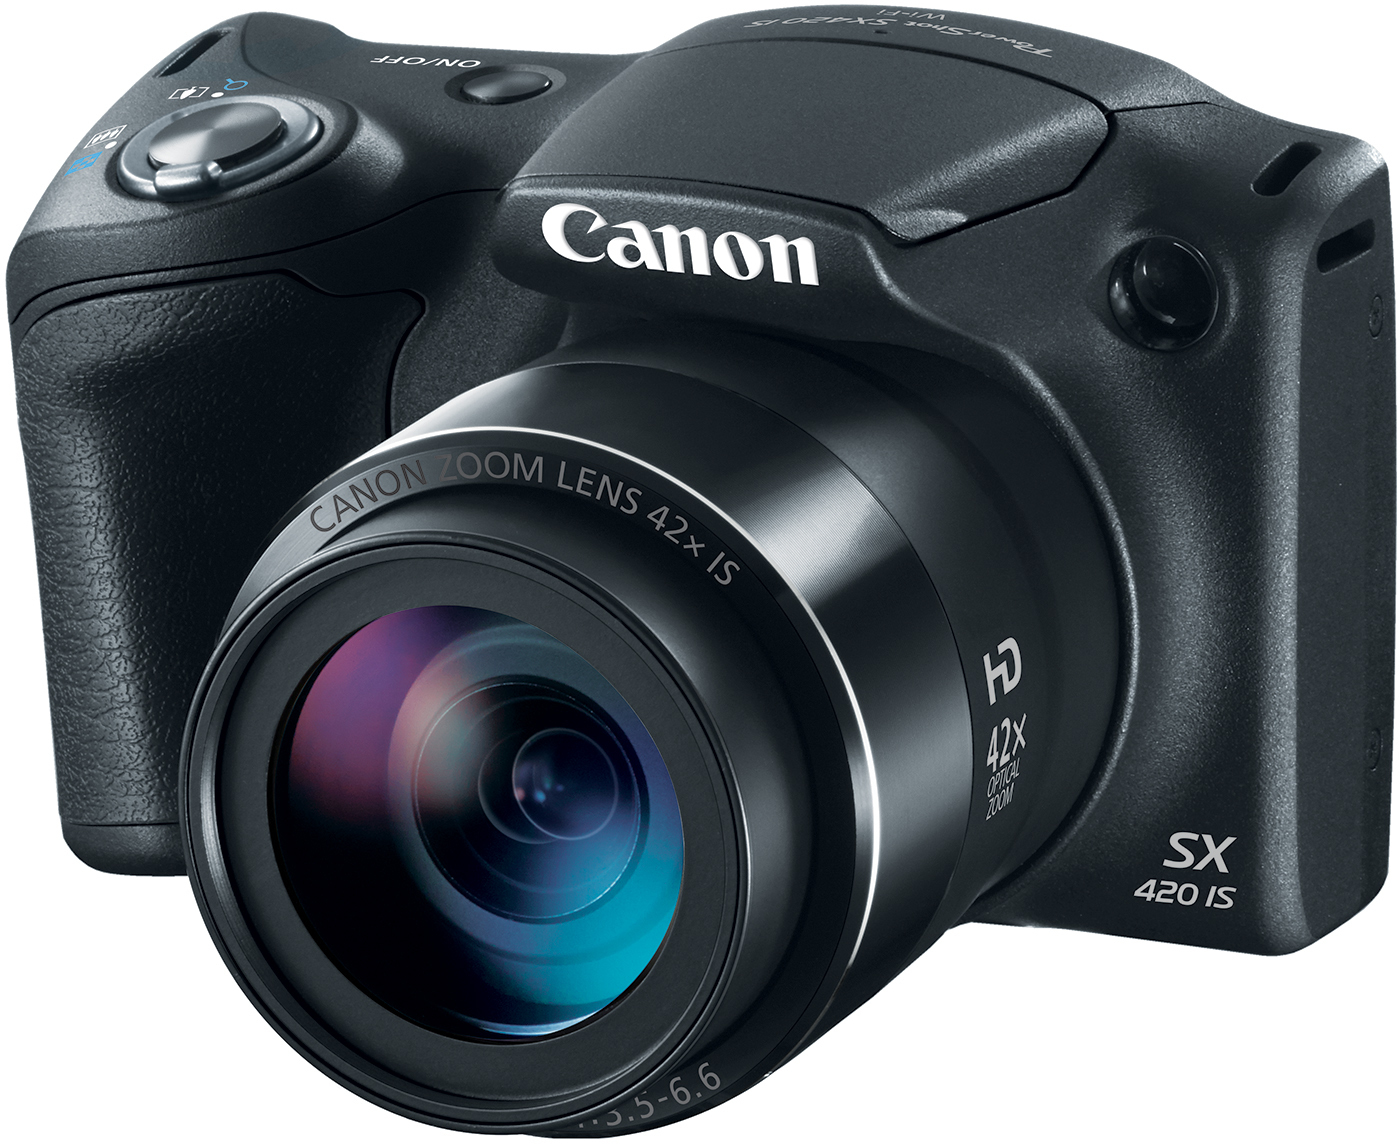 20.0-Megapixel PowerShot SX420 IS Digital Camera in Black - image 5 of 6